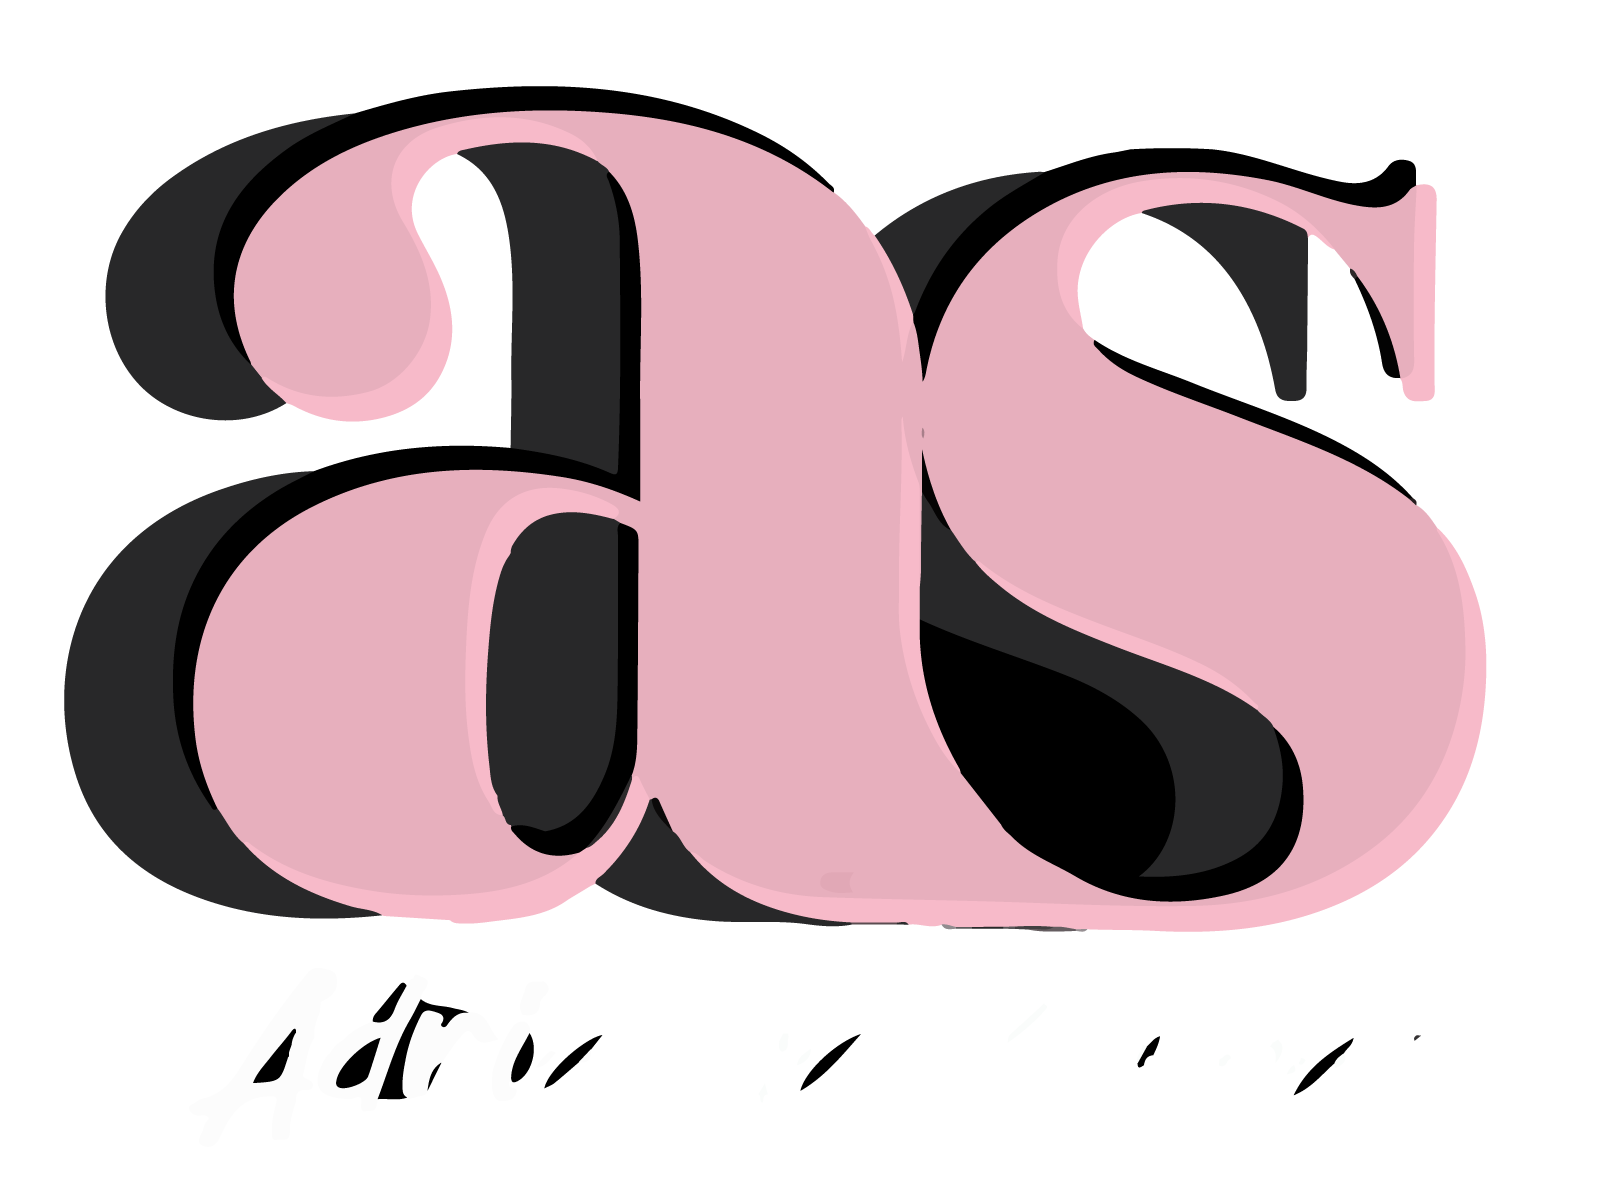 Adrianna Stewart